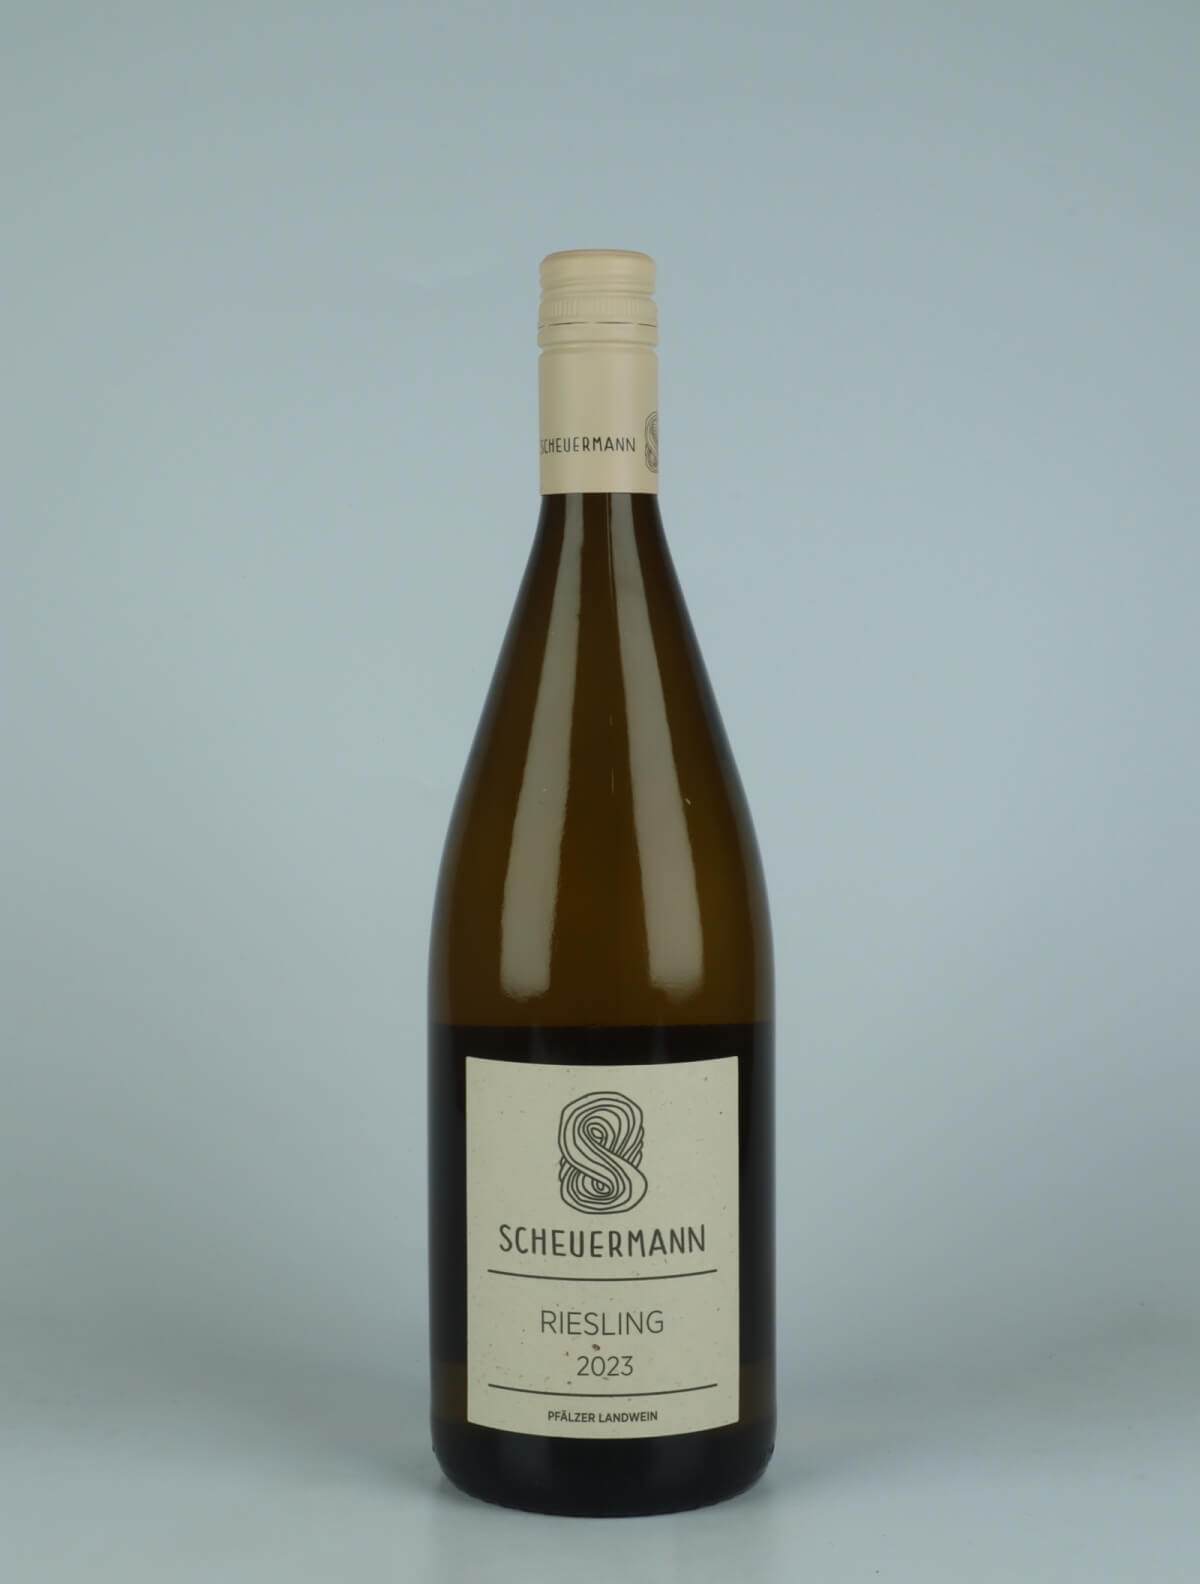 A bottle 2023 Riesling Trocken Liter White wine from Weingut Scheuermann, Pfalz in Germany